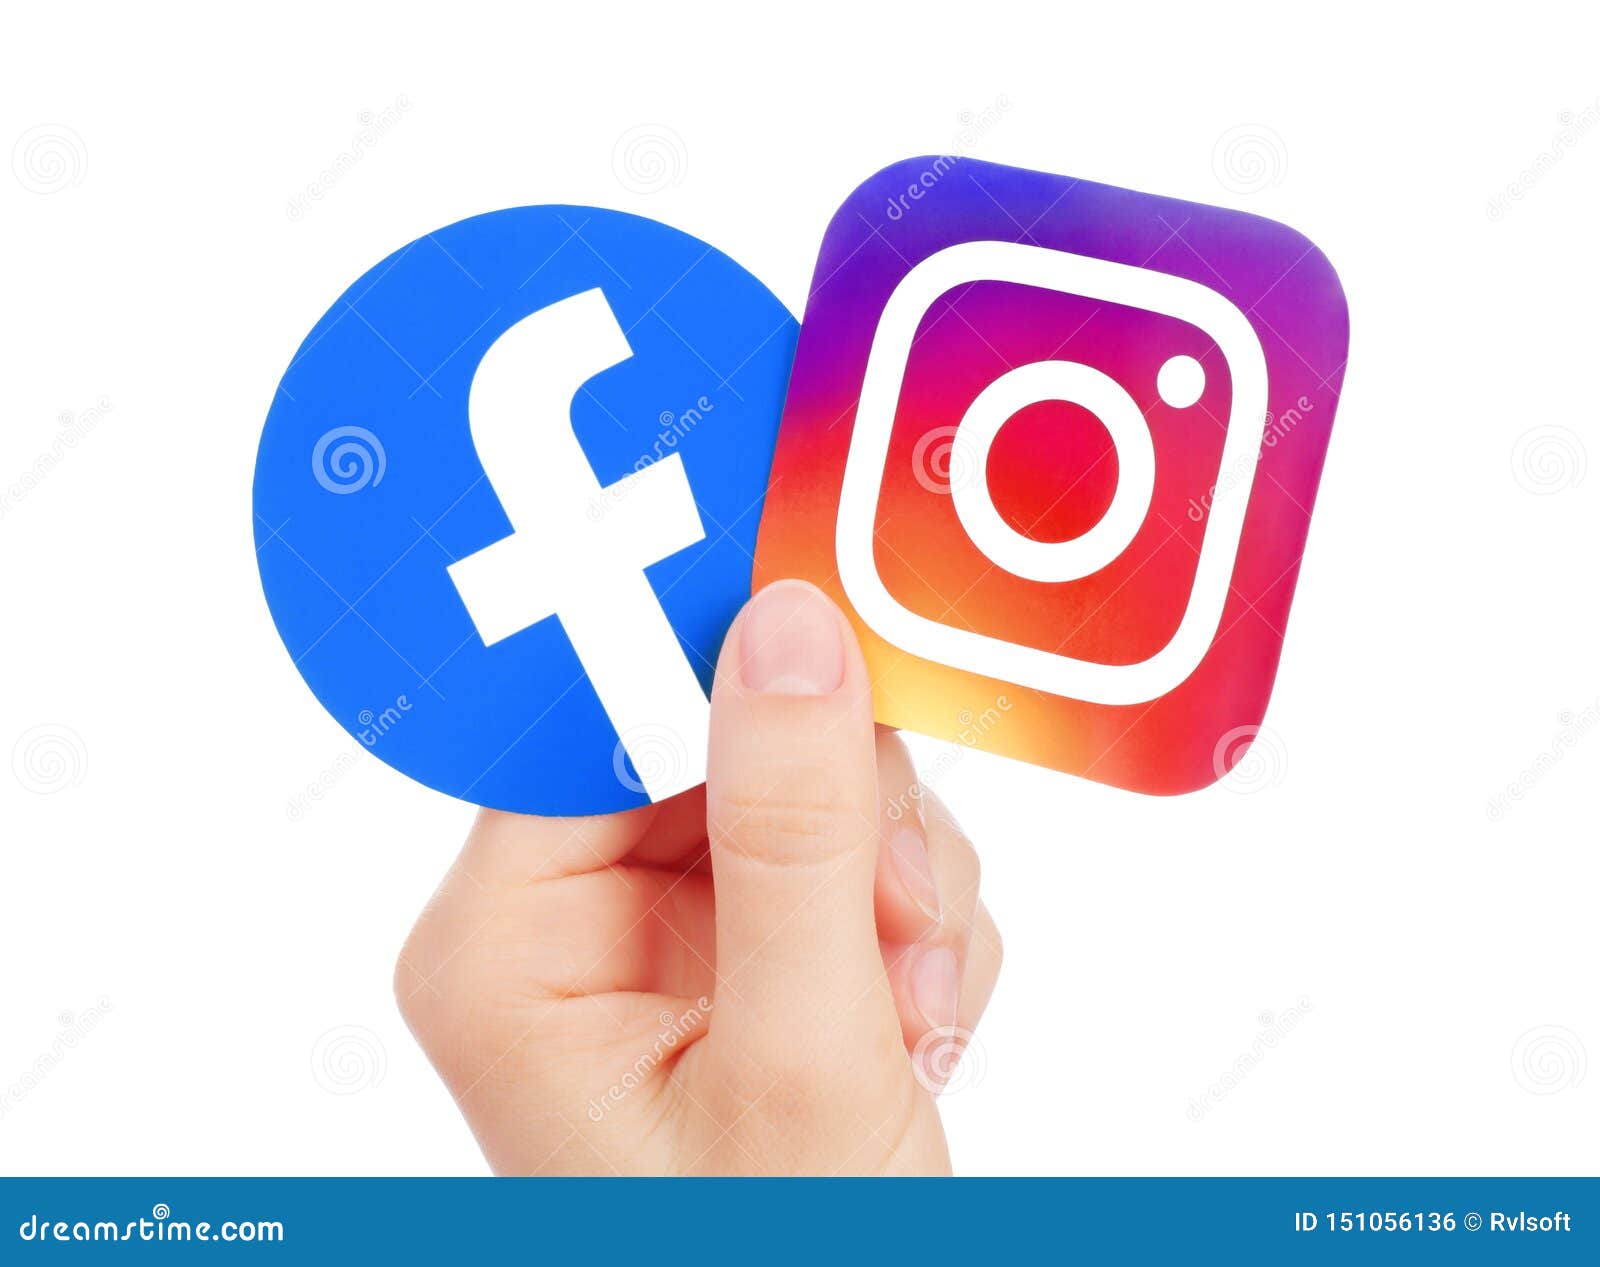 Logo mới của Facebook và Instagram trên ảnh báo chí
Logo mới của Facebook và Instagram đã xuất hiện trên ảnh báo chí, mang đến trải nghiệm tuyệt vời cho người dùng. Logo mới có những thay đổi nhỏ nhưng mang lại sự mới mẻ và đẹp mắt hơn. Đây là lựa chọn hoàn hảo cho những ai muốn tạo sự khác biệt cho ảnh báo chí của mình.